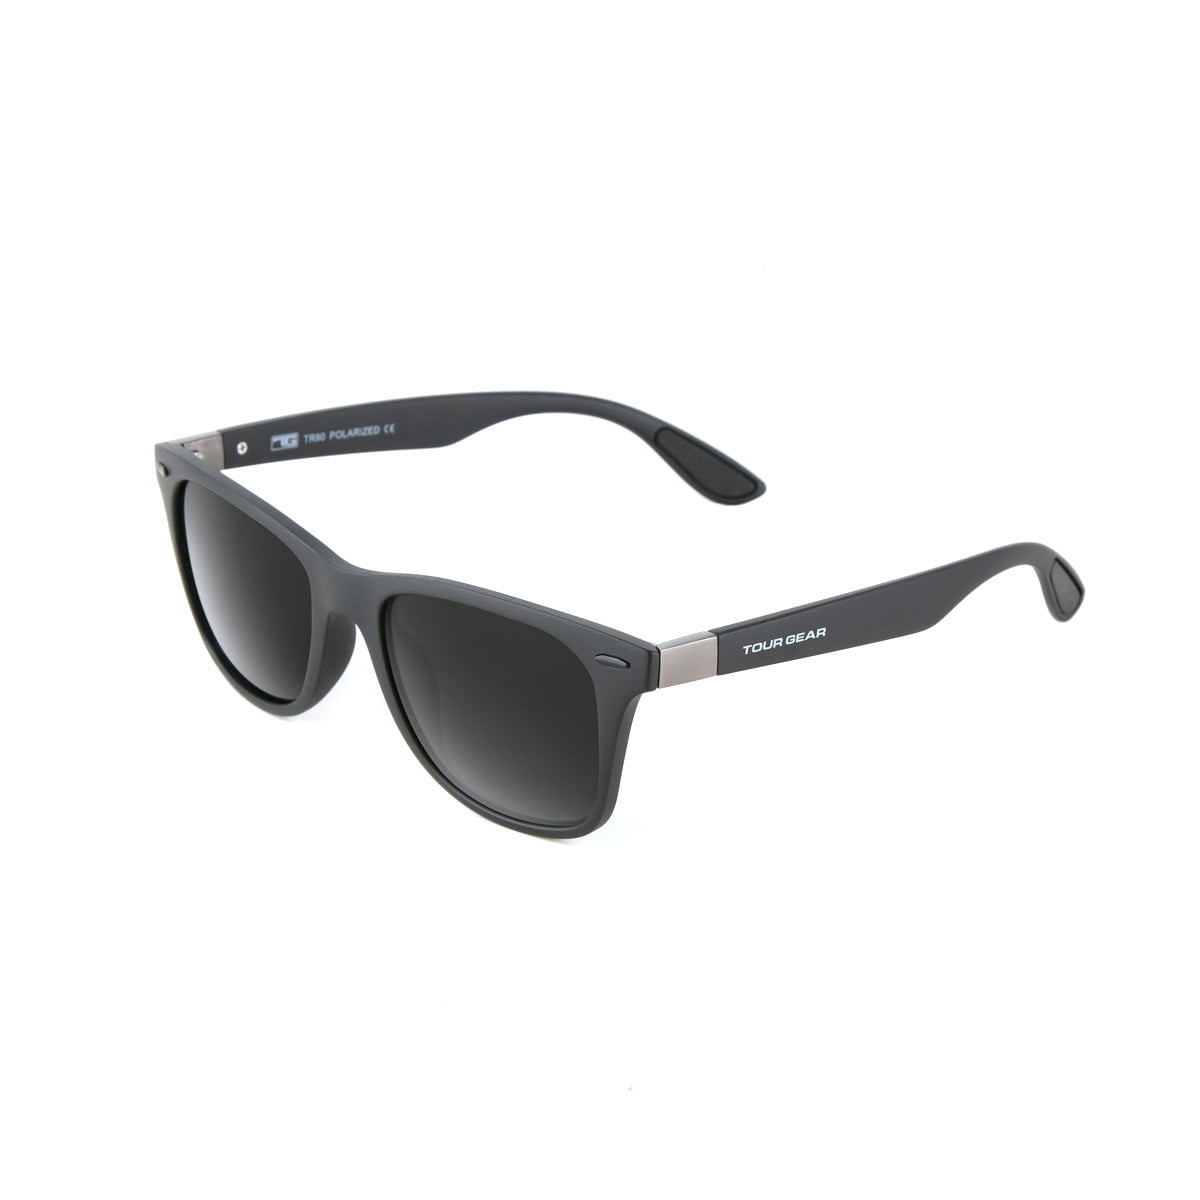 Bevi Sports Sunglasses Polarized UV400 Mirror Glasses Flixable Frame for Women Men Outdoor Exercise